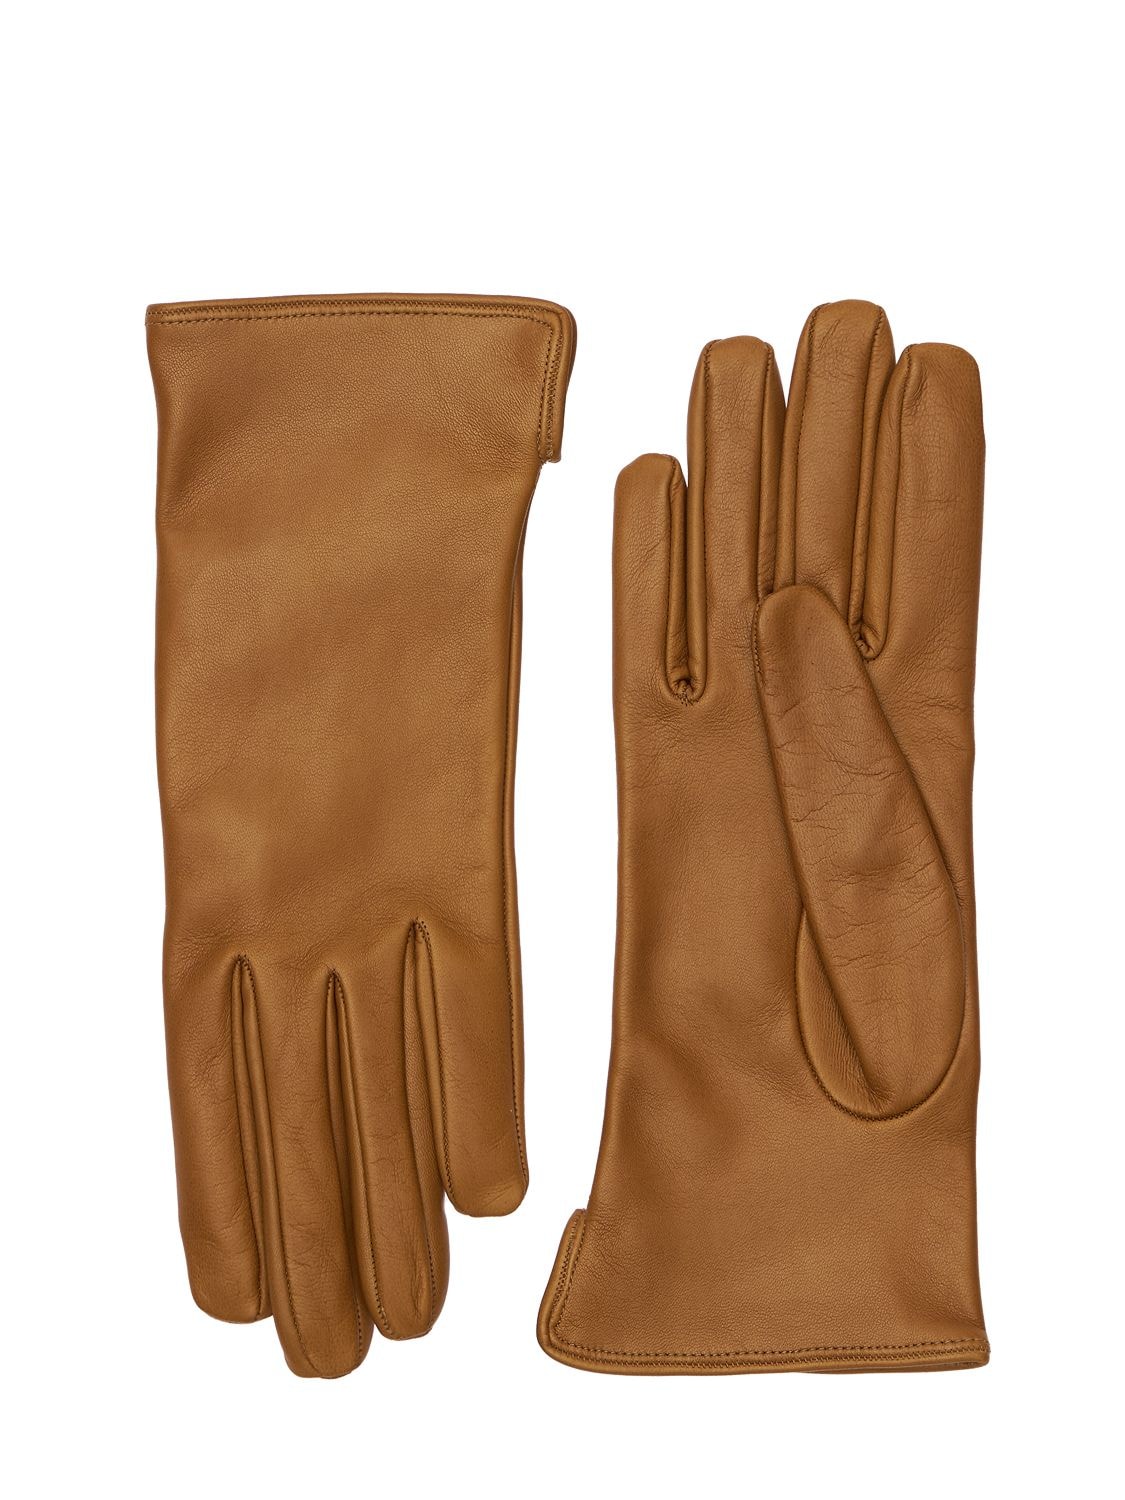 MARIO PORTOLANO Leather Gloves